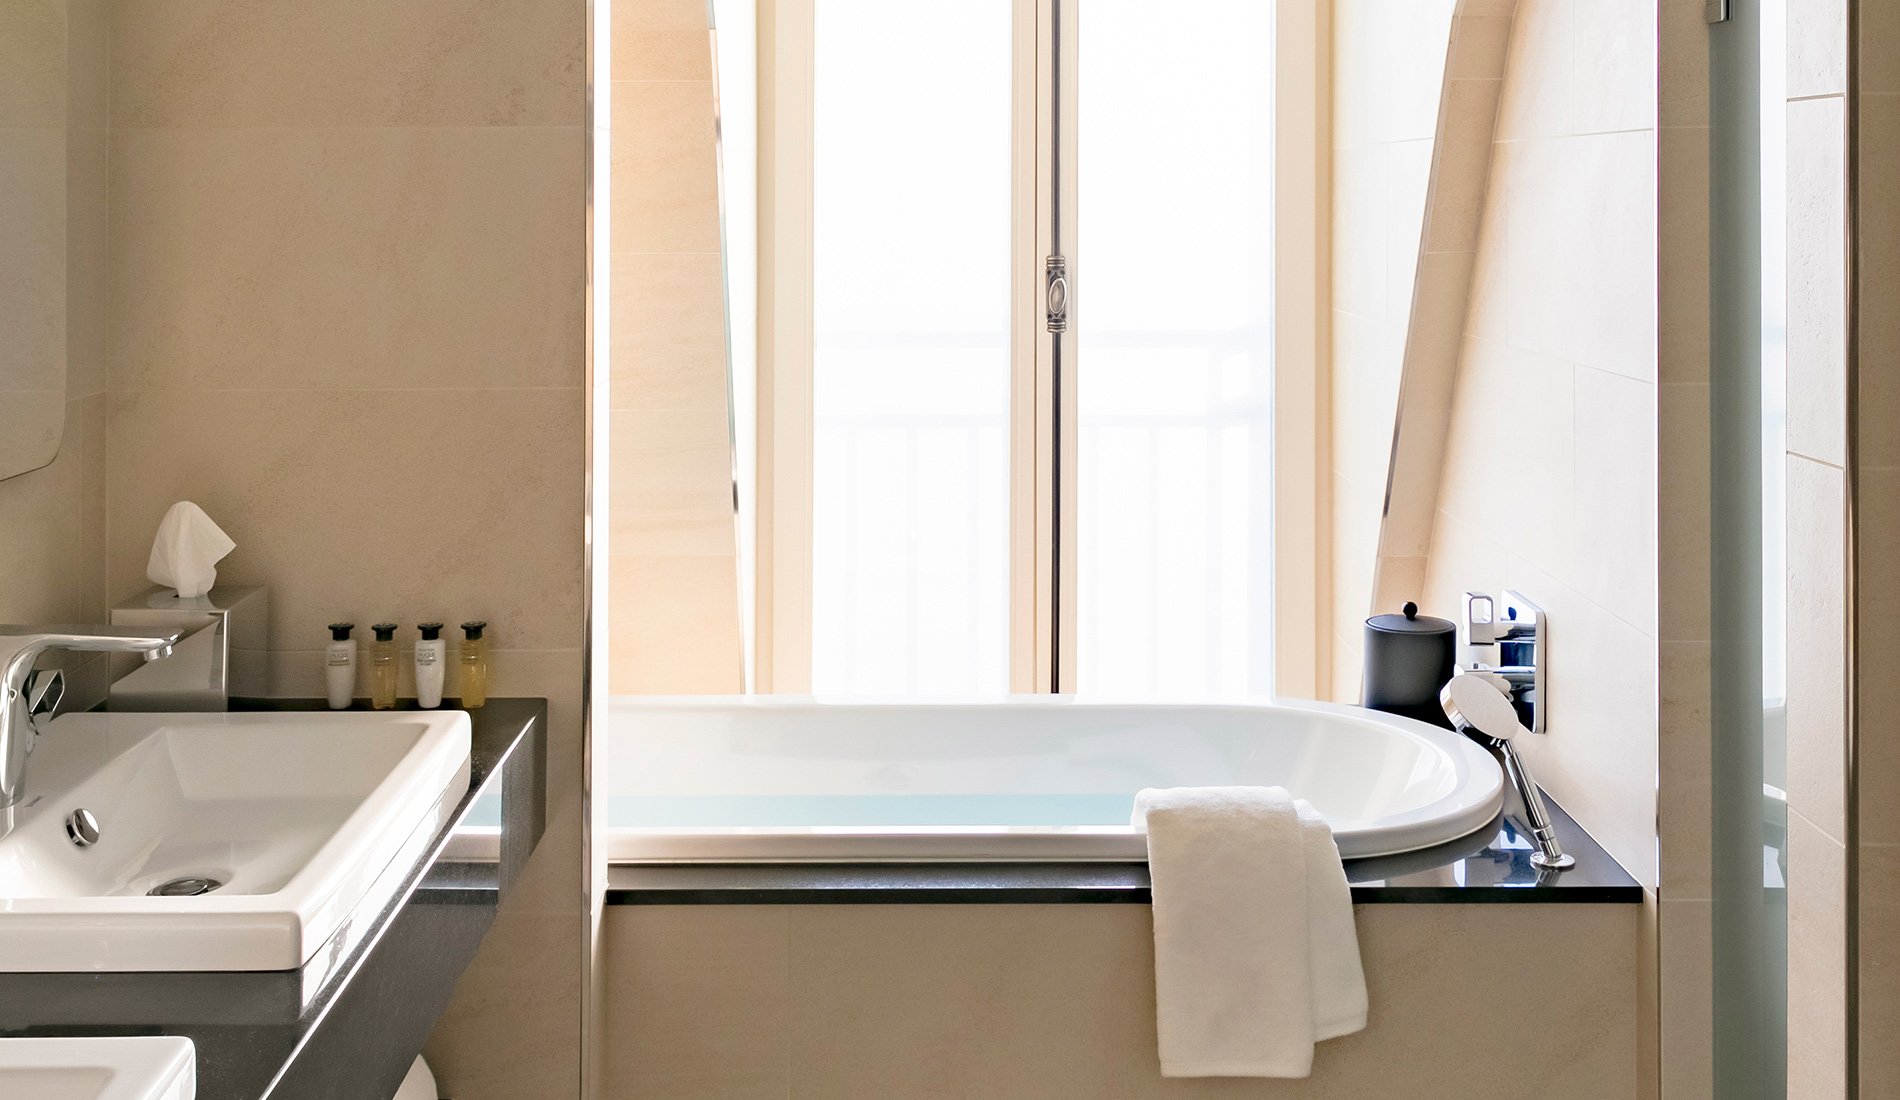 Hôtel de luxe - Maison Albar Hotels Le Pont-Neuf - 5 étoiles - salle de bain